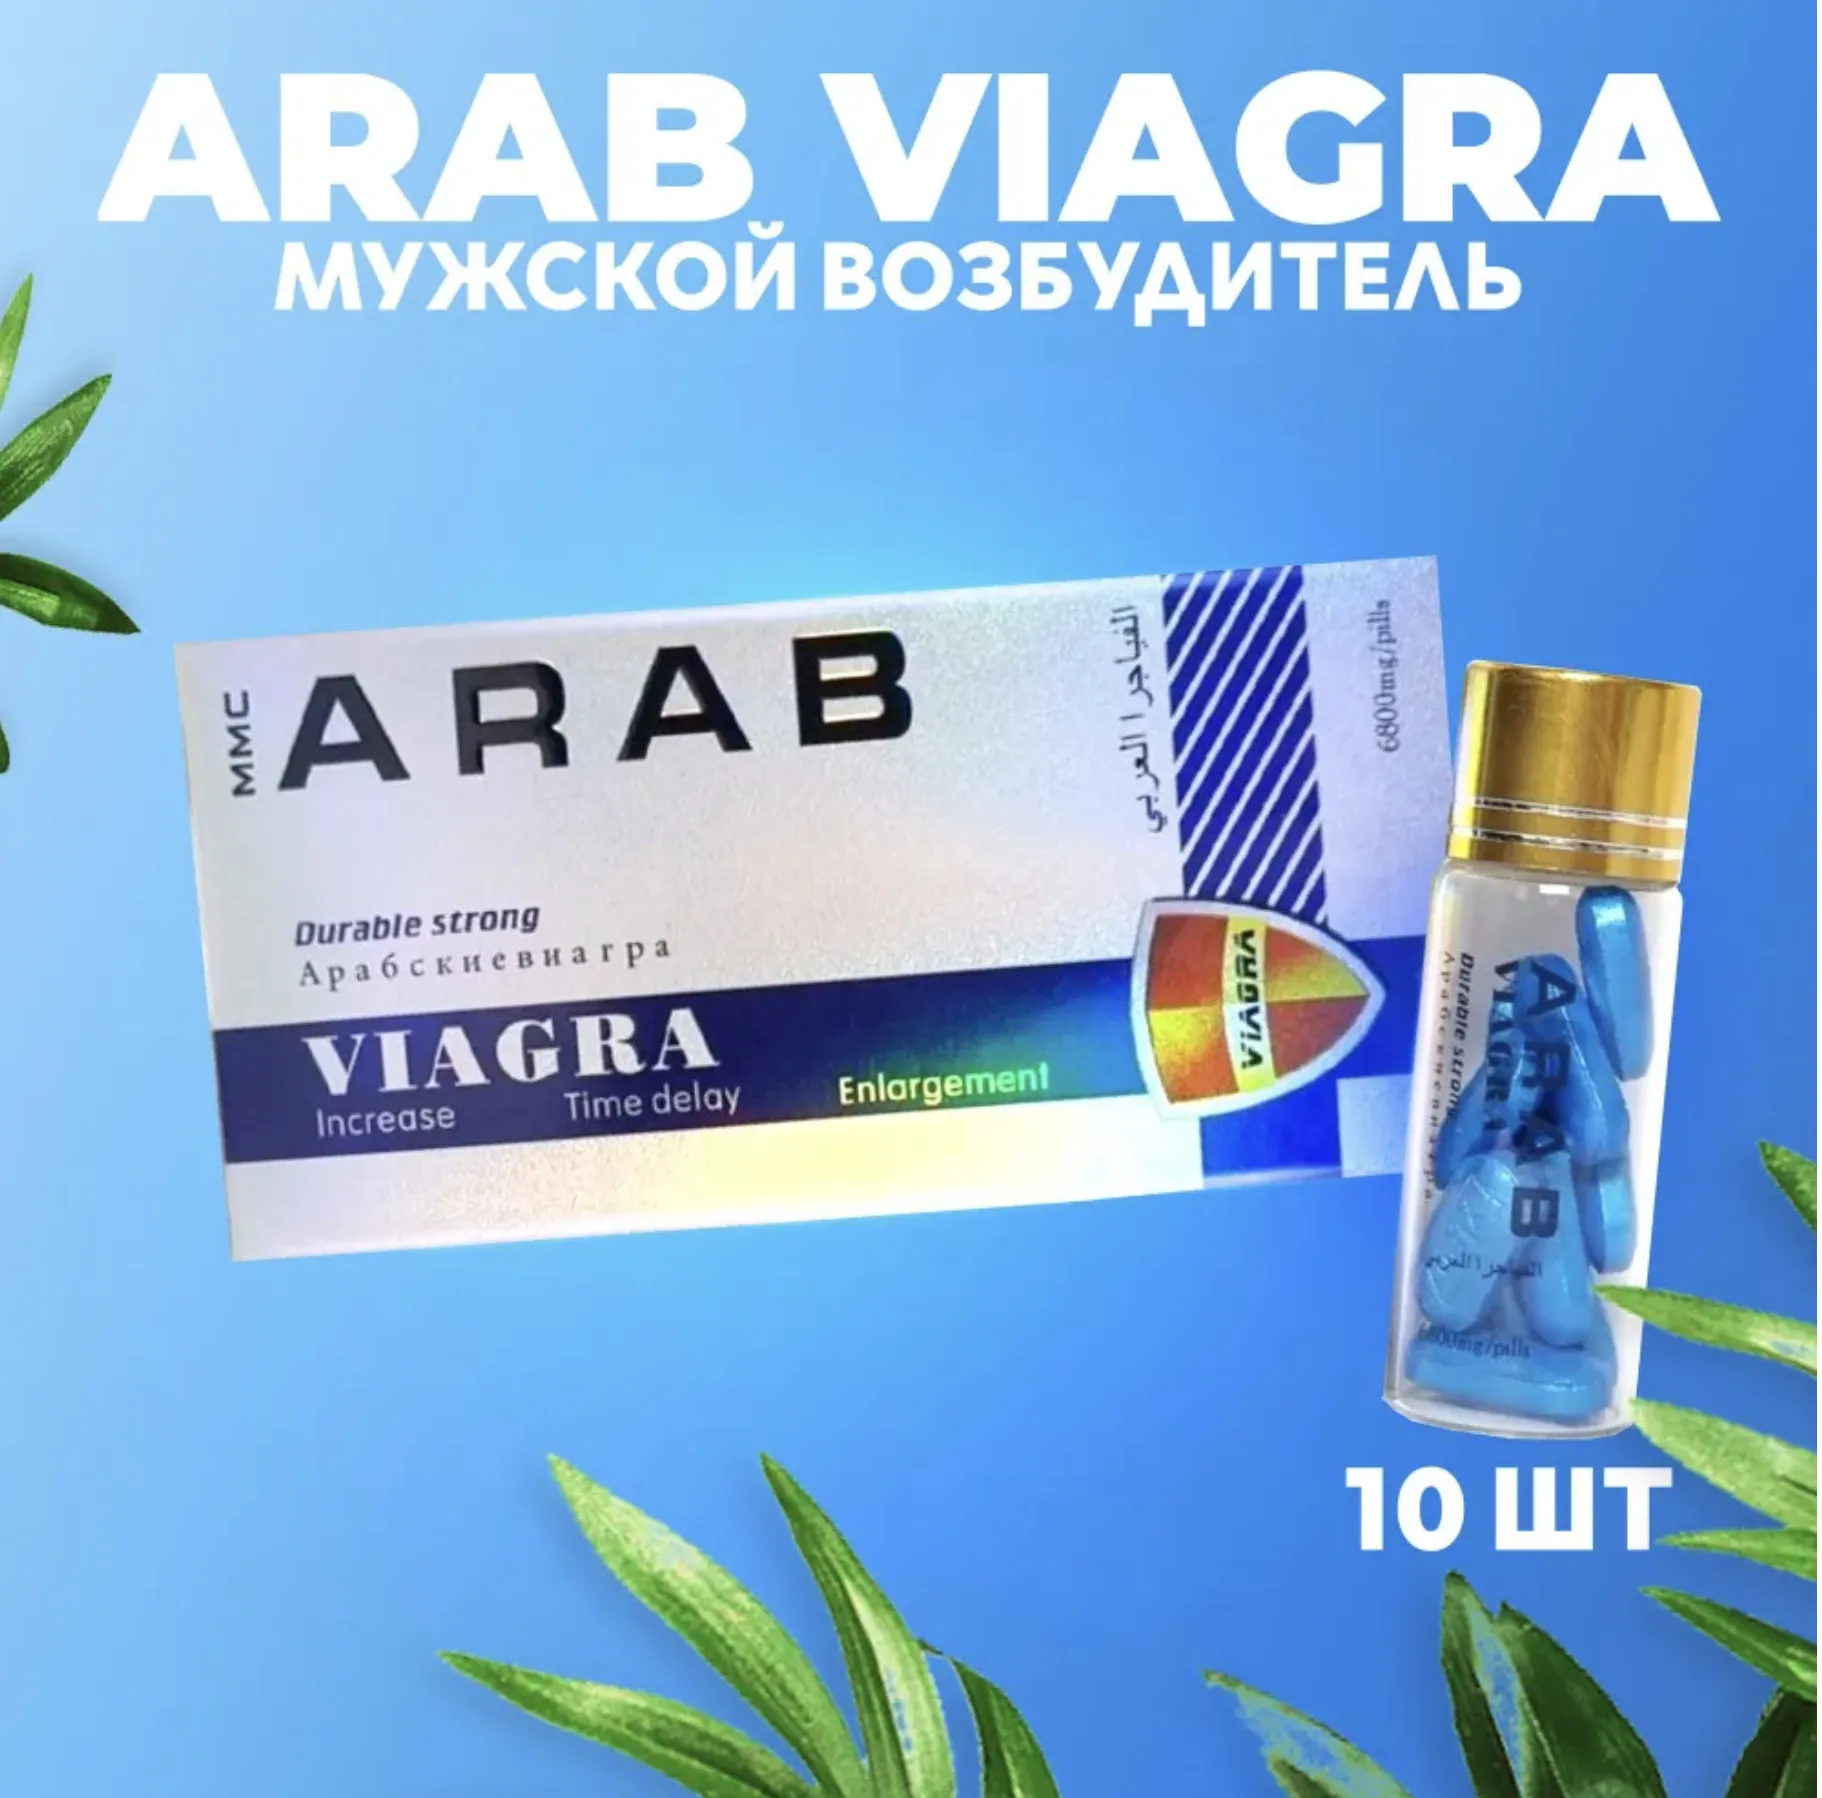 Мужской возбудитель "Arab viagra". Стимулирующее средство для потенции. 10 таблеток#1